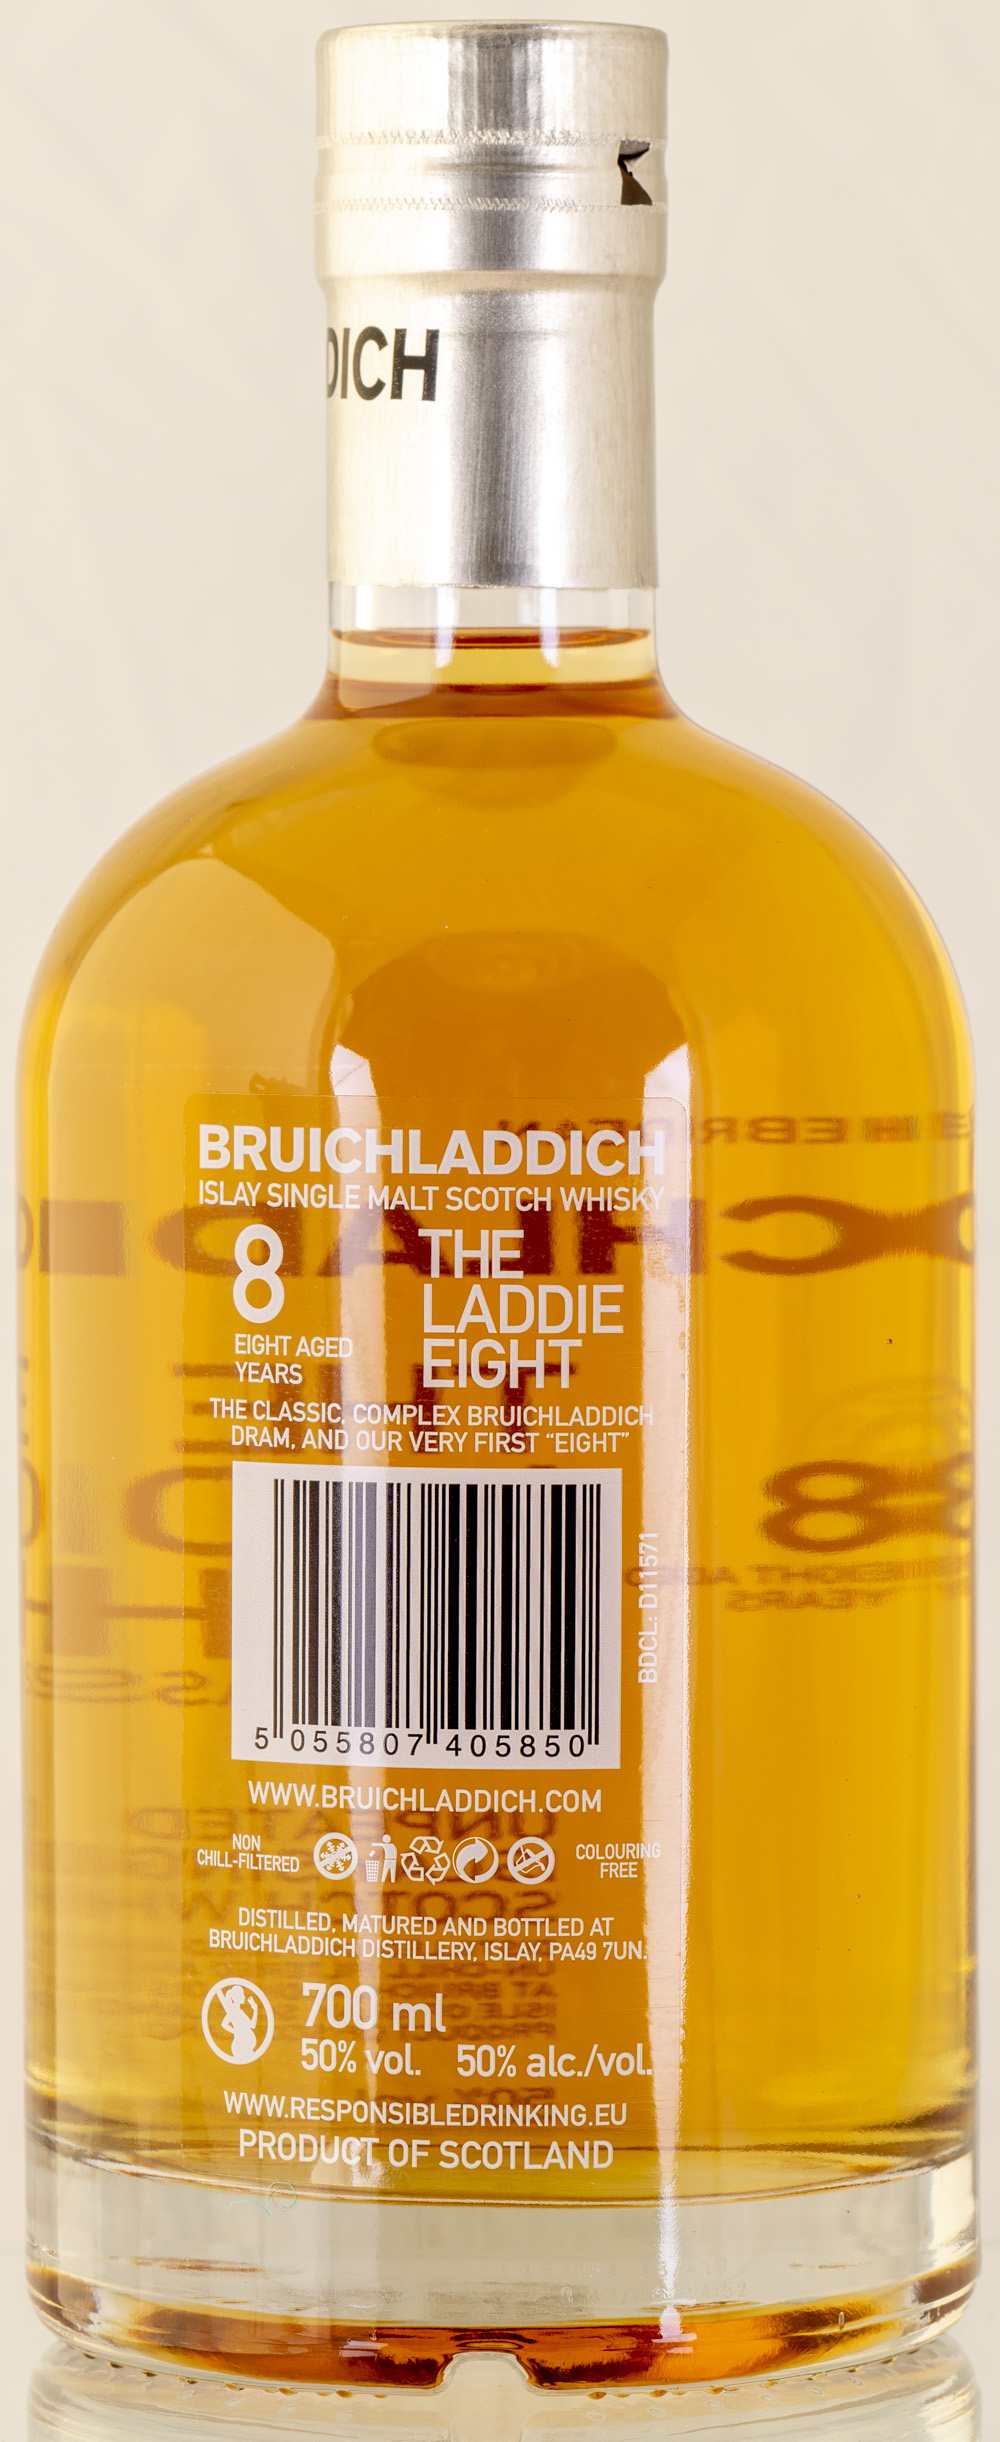 Billede: PHC_2295 - Bruichladdich The Laddie Eight - bottle back.jpg